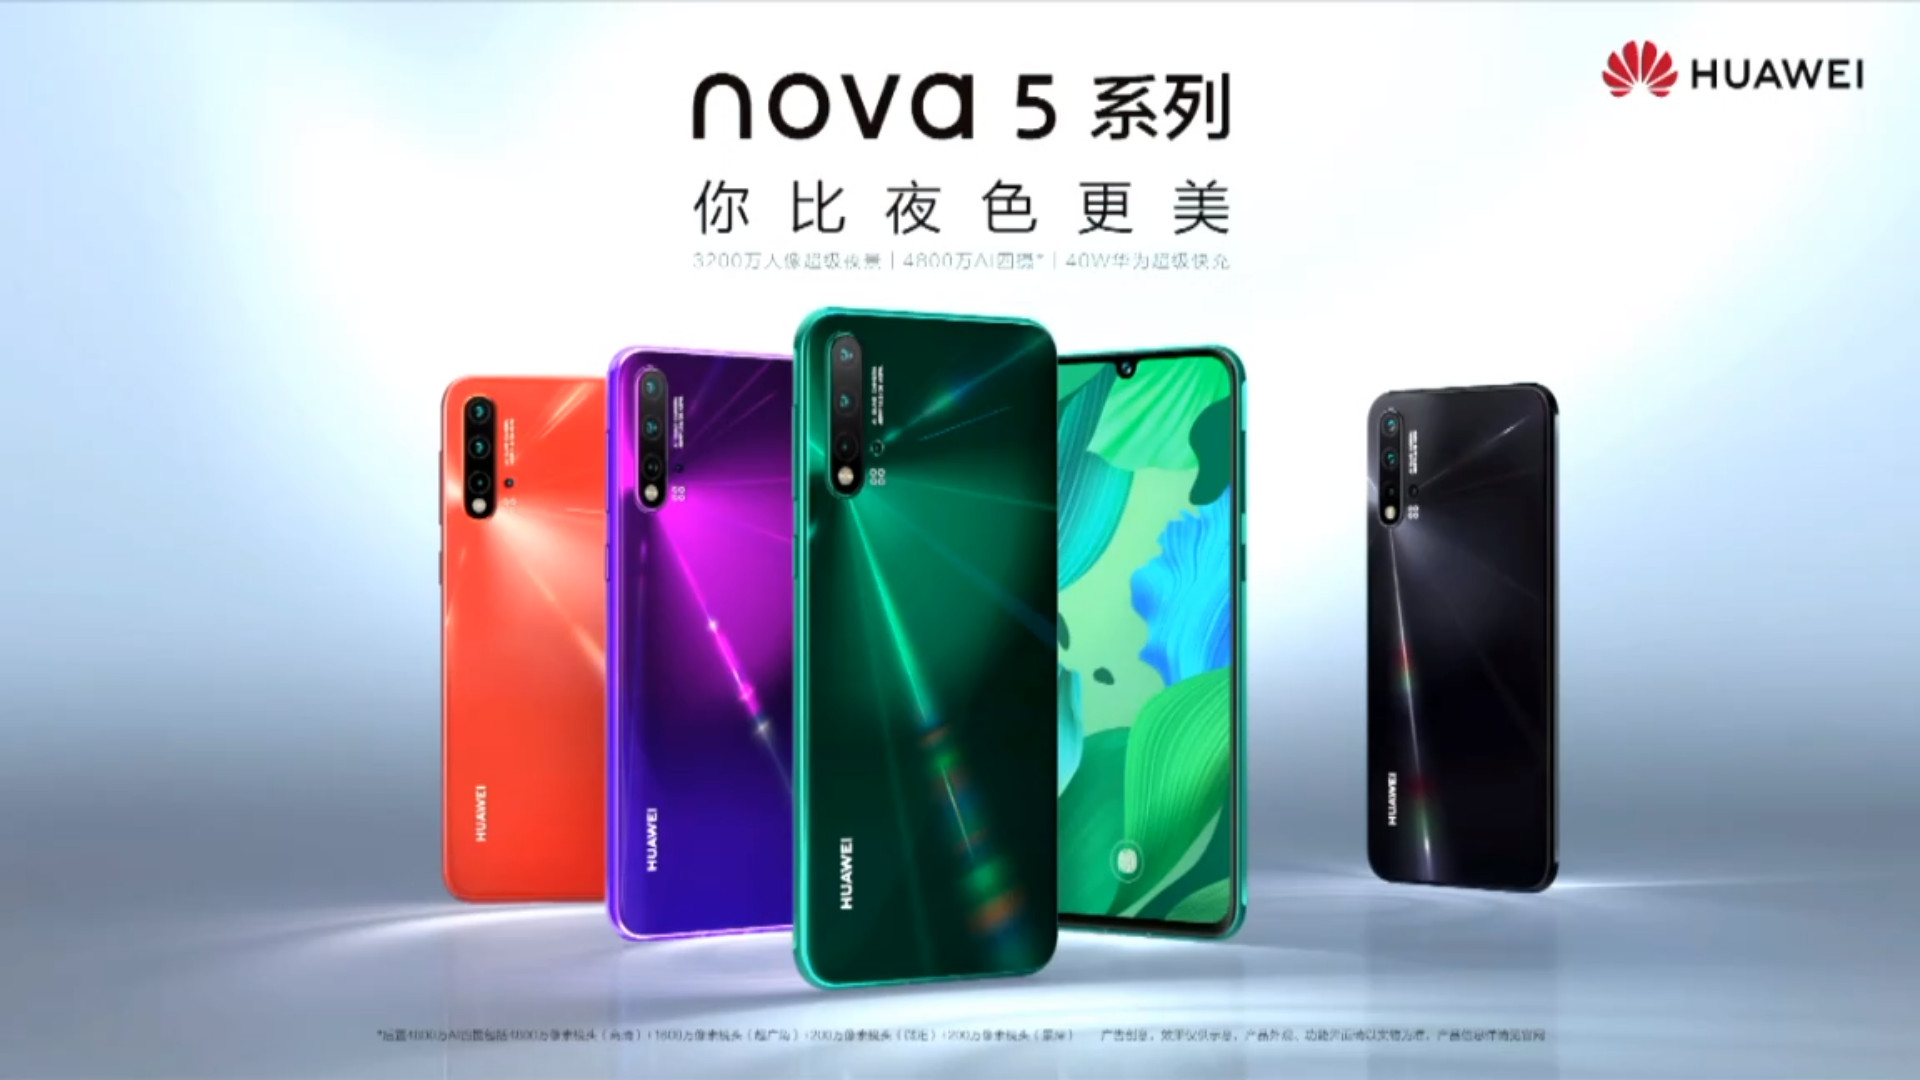 The Huawei Nova 5 series.